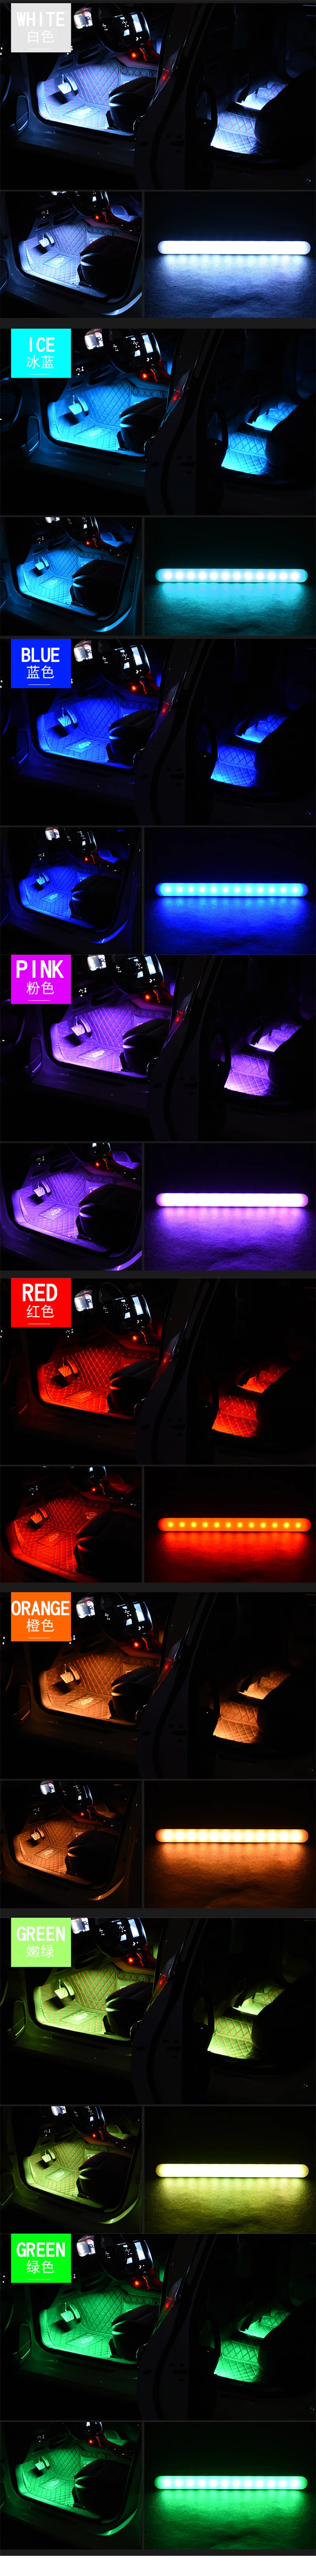 Автомобильный интерьерный светильник RGB светильник s светодиодная лента неоновая лампа декоративный дистанционный музыкальный голосовой контроль автомобильный атмосферный светильник s